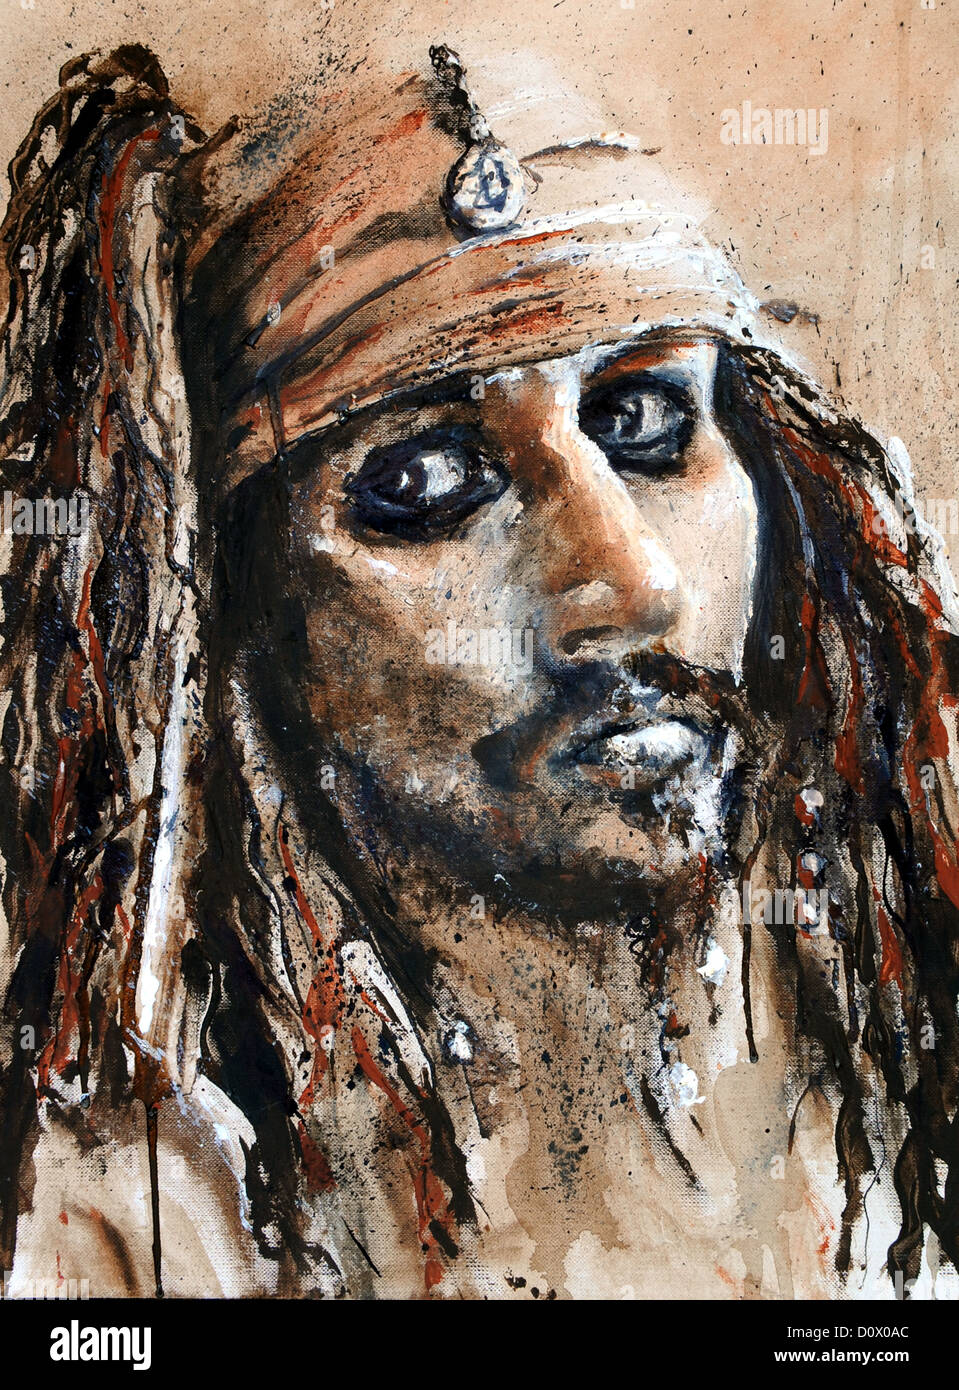 Mixed media. Captain Jack Sparrow, by Steve Cobb Stock Photo